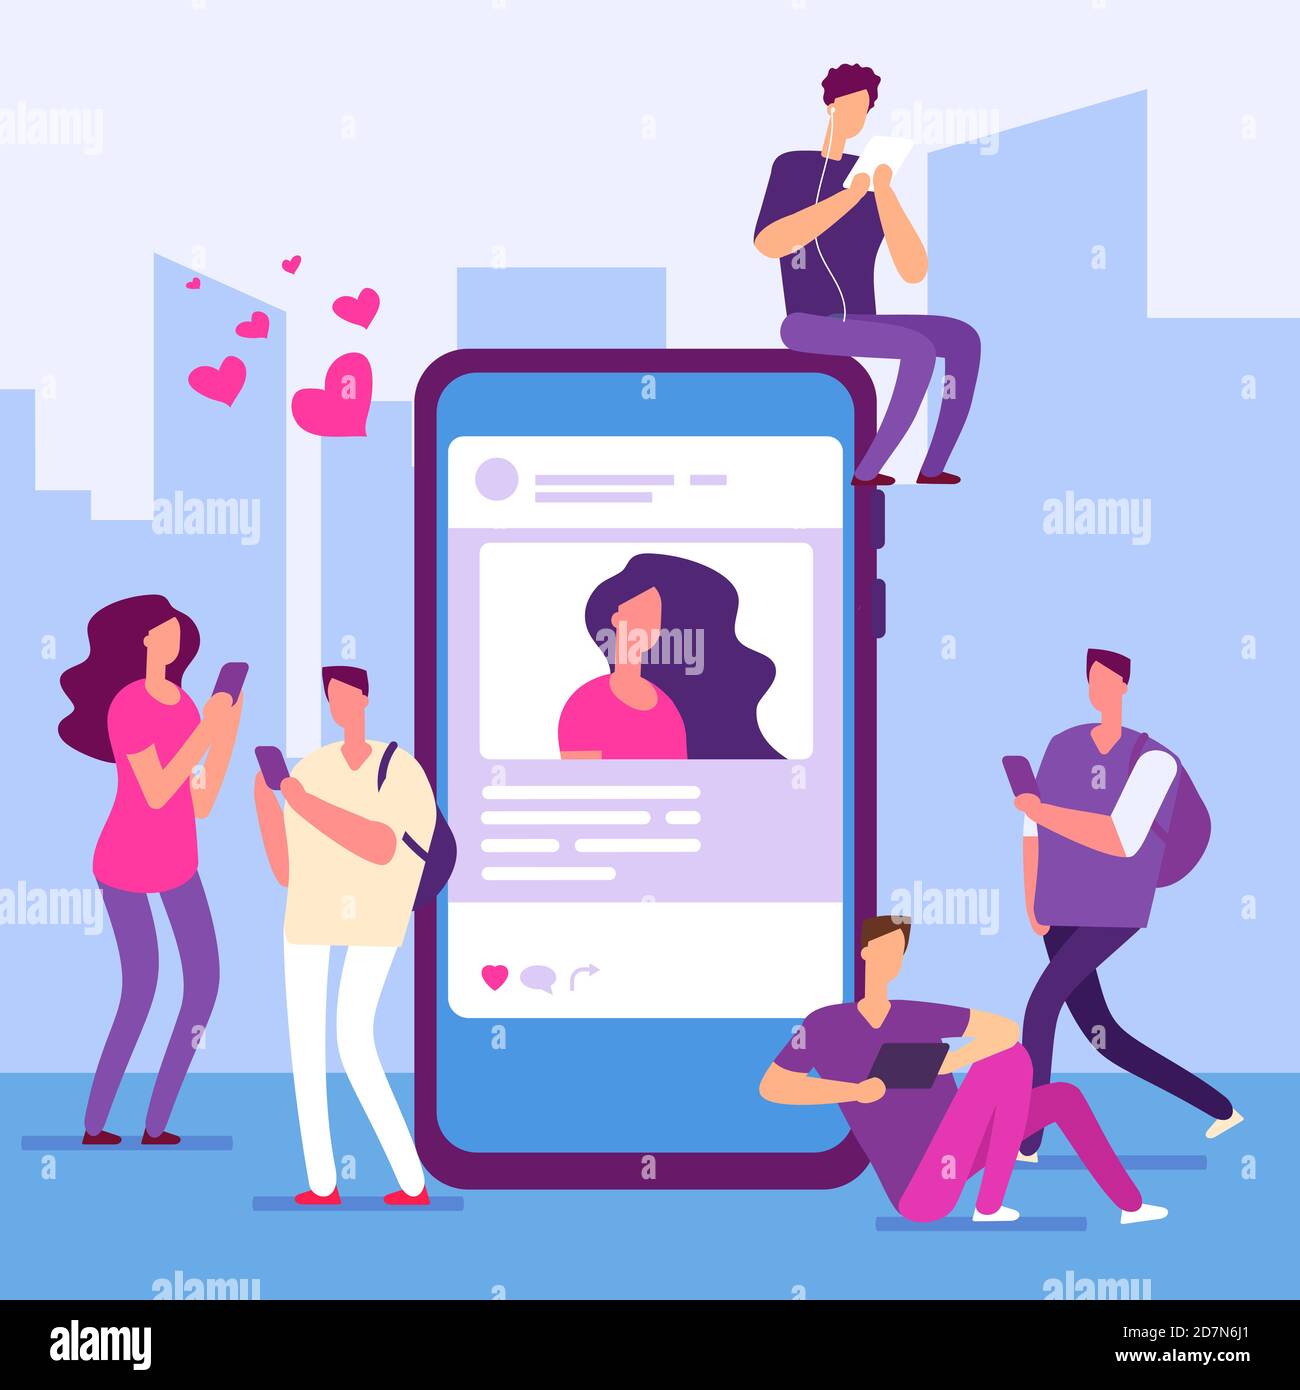 Social-Media-Konzept. Menschen folgen Smartphone mit Nachricht und mögen. Vektor-Smartphone und Networking, Social Online-Feedback Illustration Stock Vektor